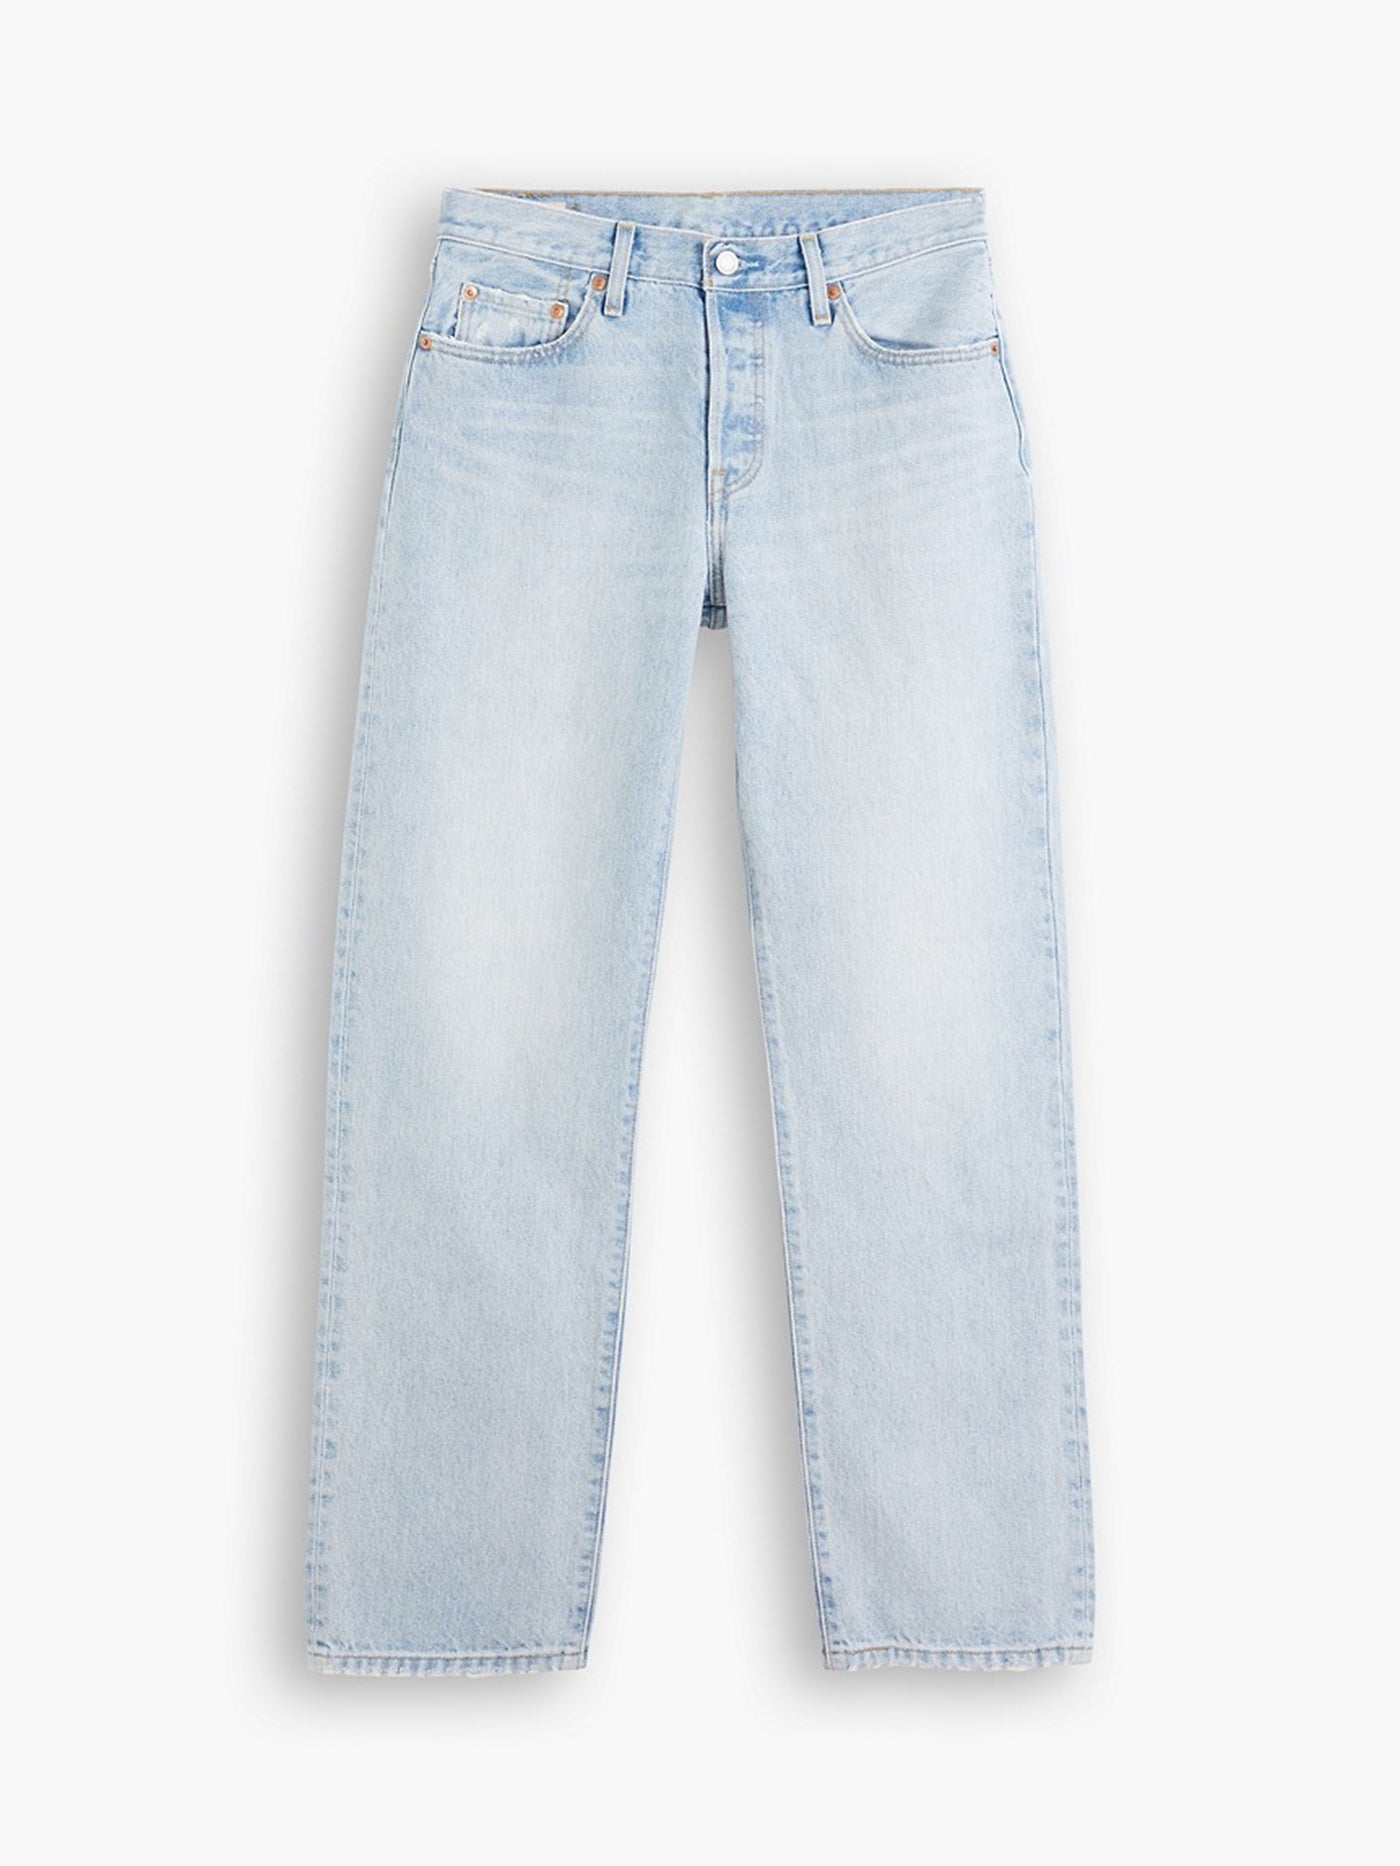 Levi's 501 '90s Jeans - Worn In Light Indigo – gilt+gossamer